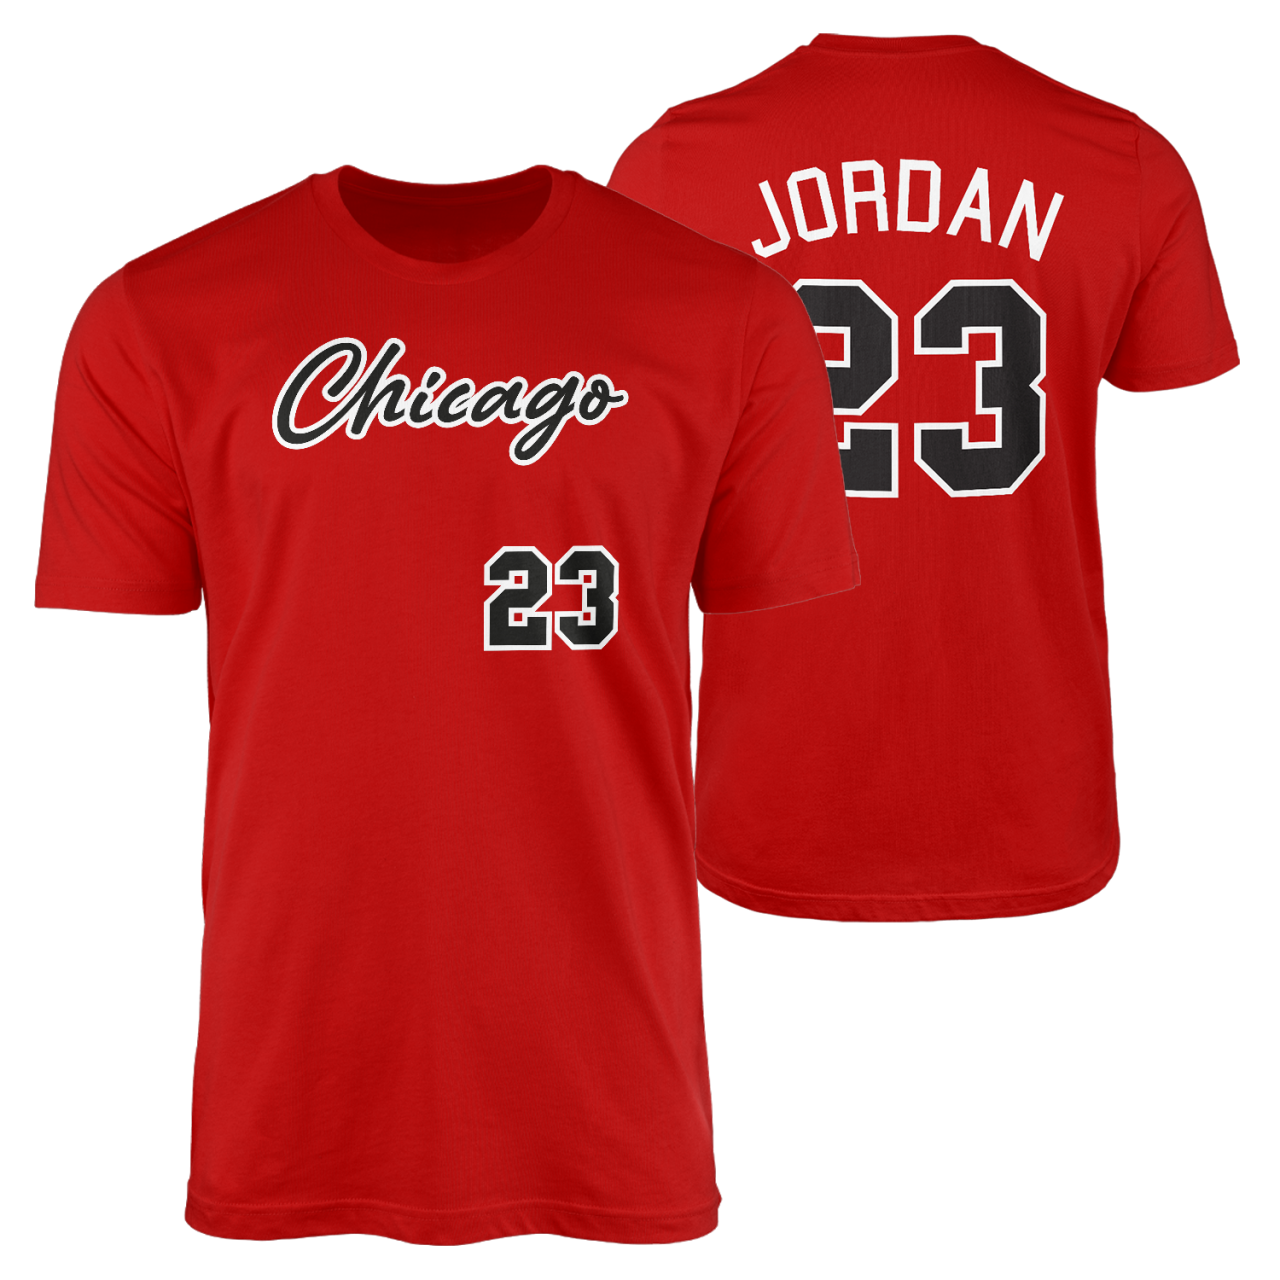 Michael Jordan Kırmızı Forma Tshirt